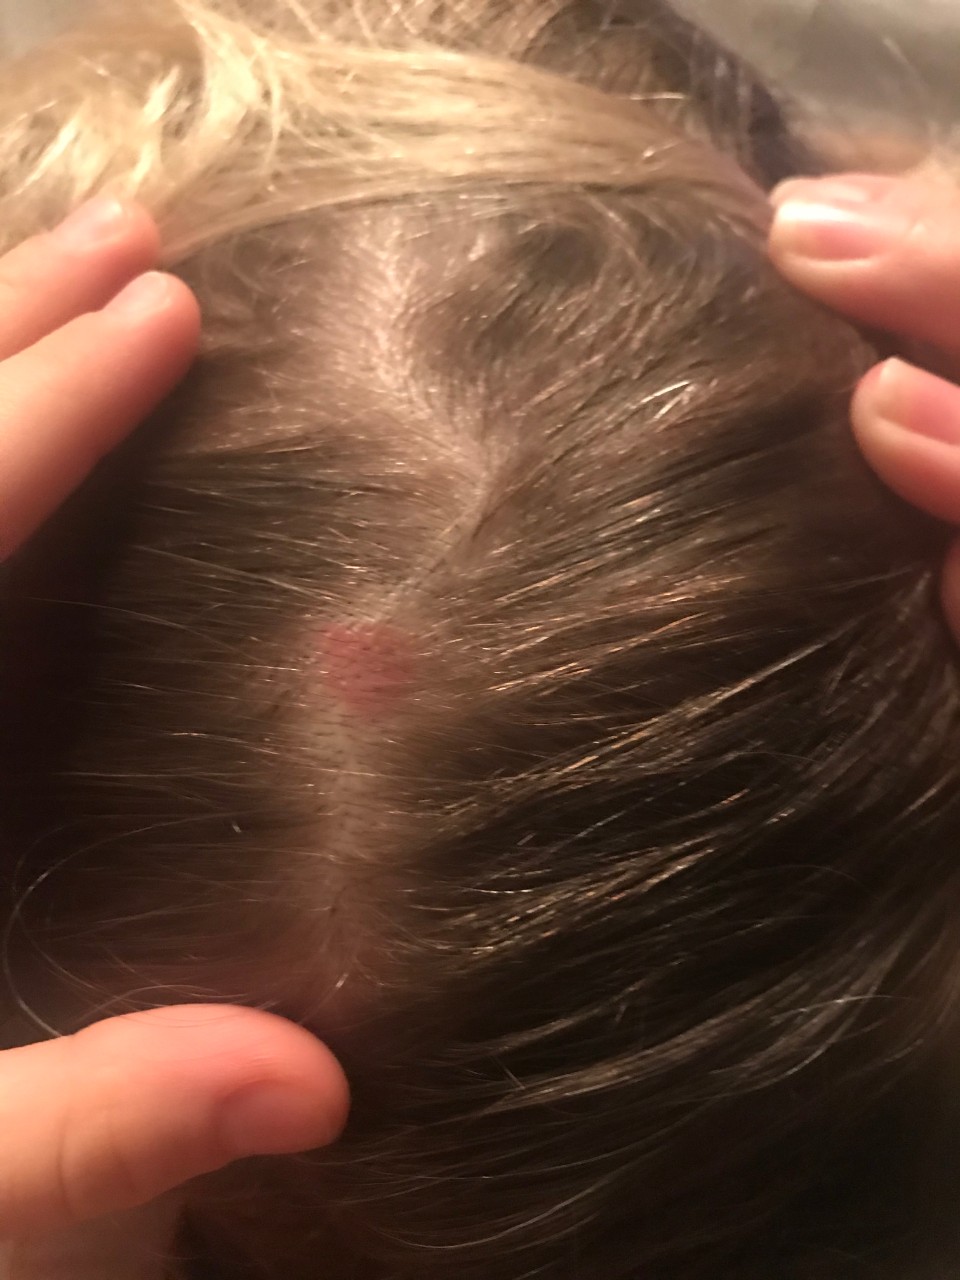 фото заболевания волосистой части головы у виска